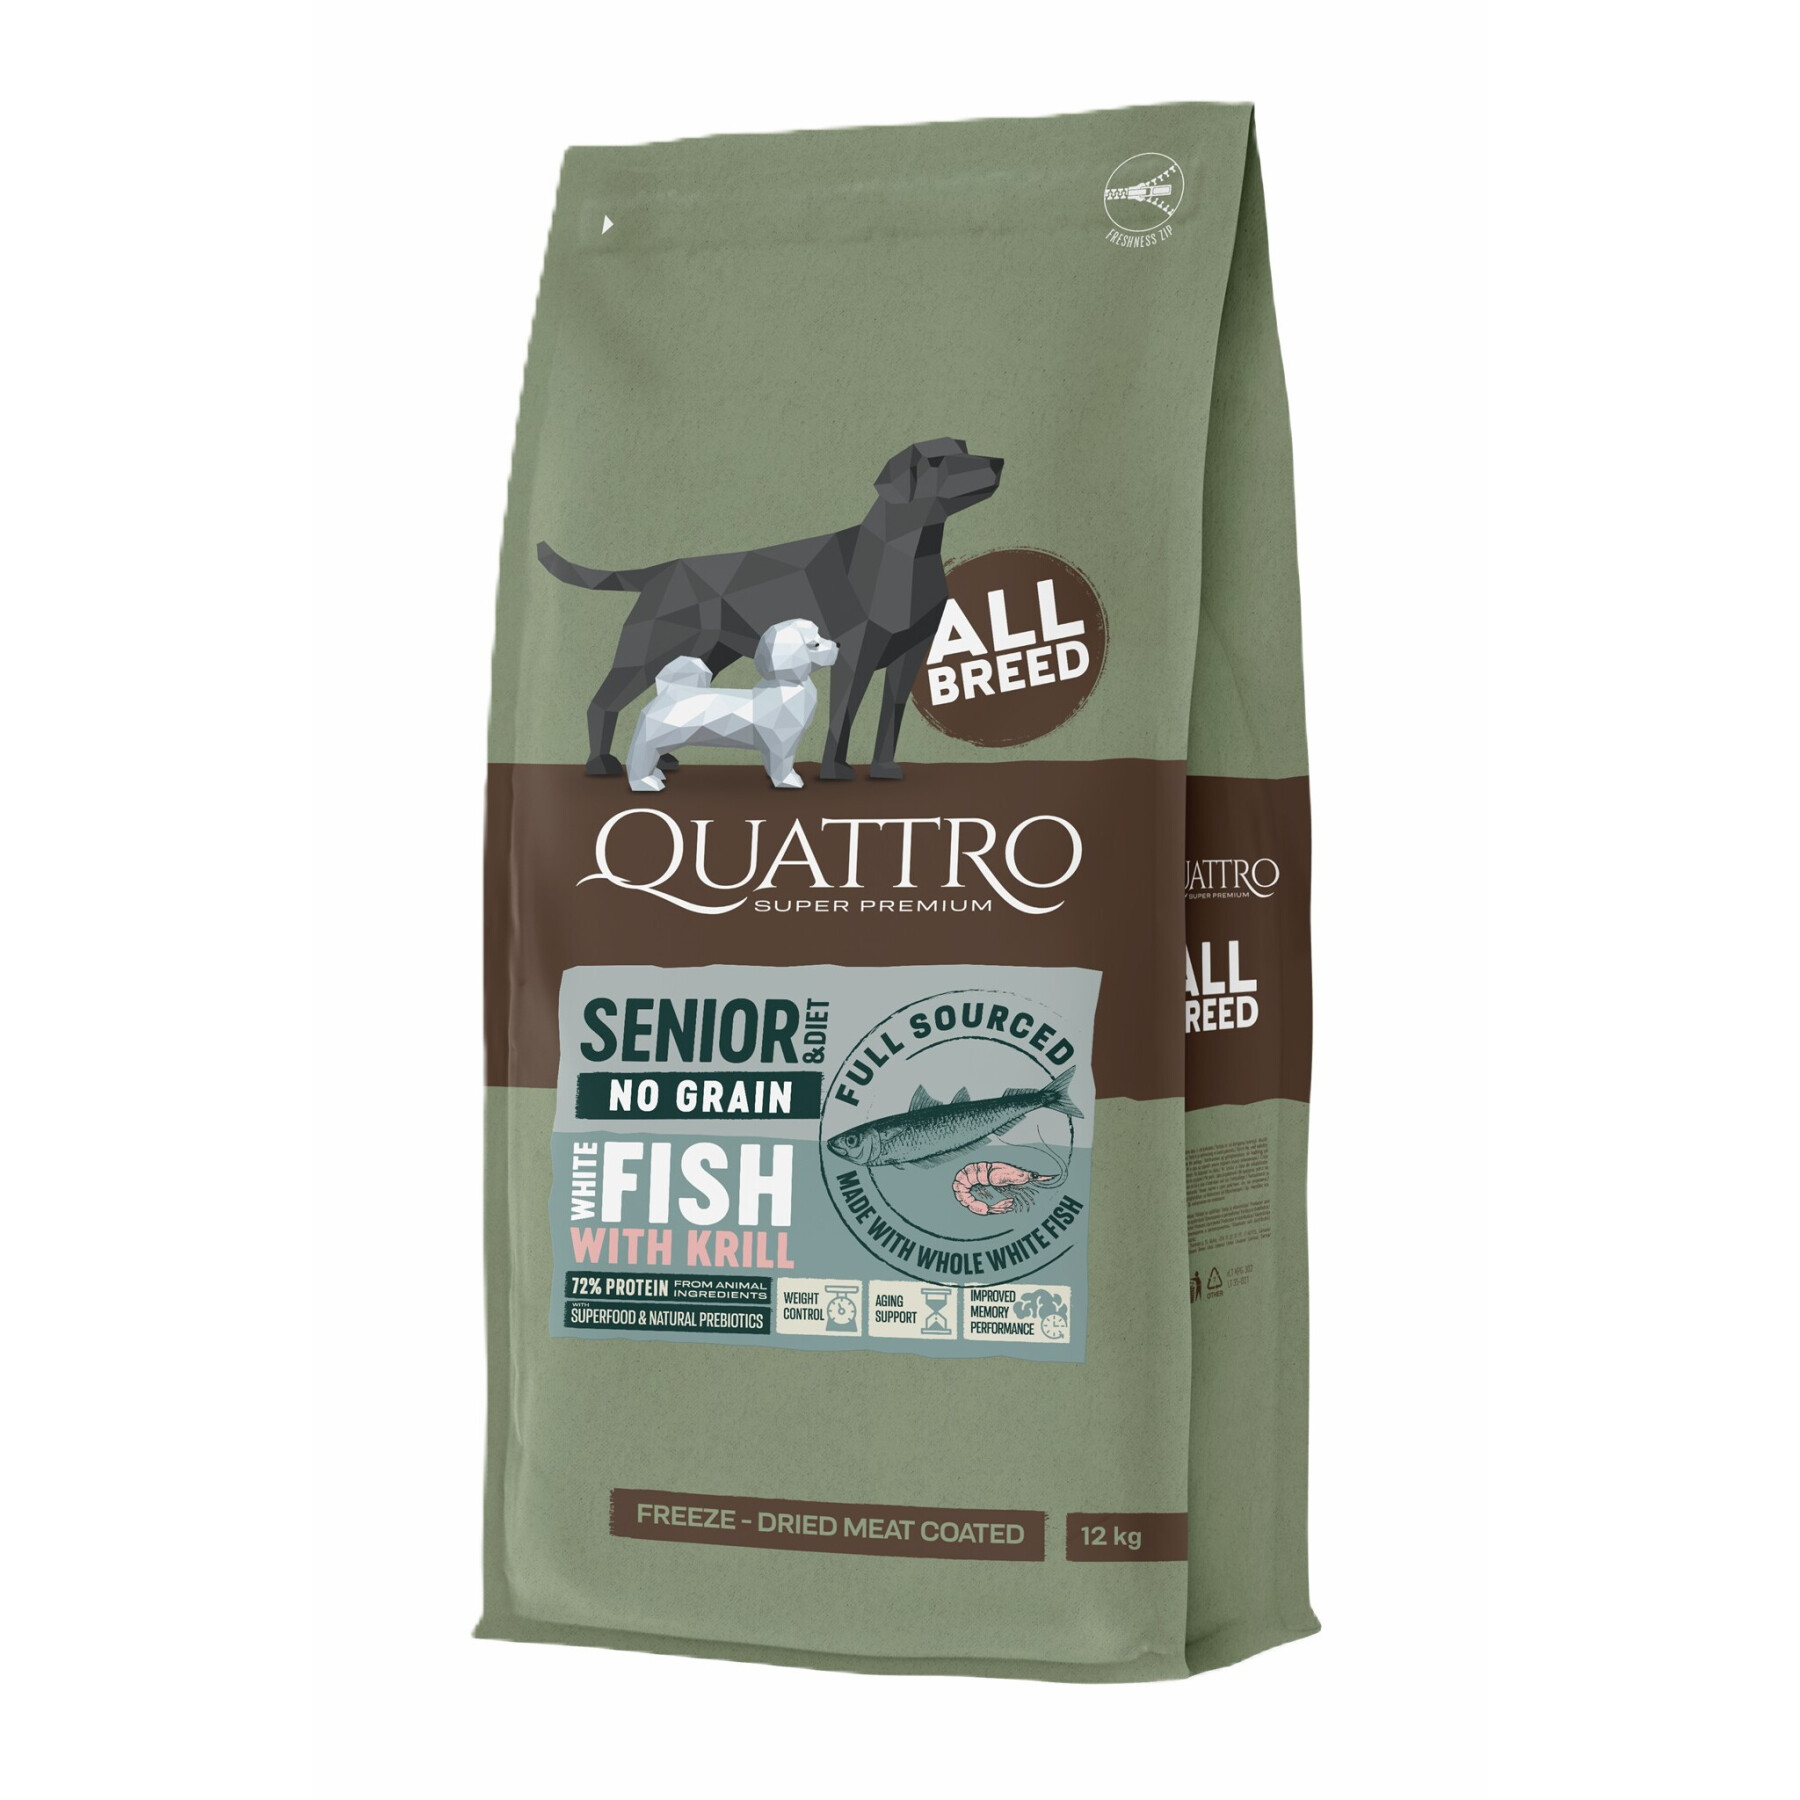 Croquettes pour chien toutes races sans céréales poisson blanc et krill BUBU Pets Quatro Super Premium